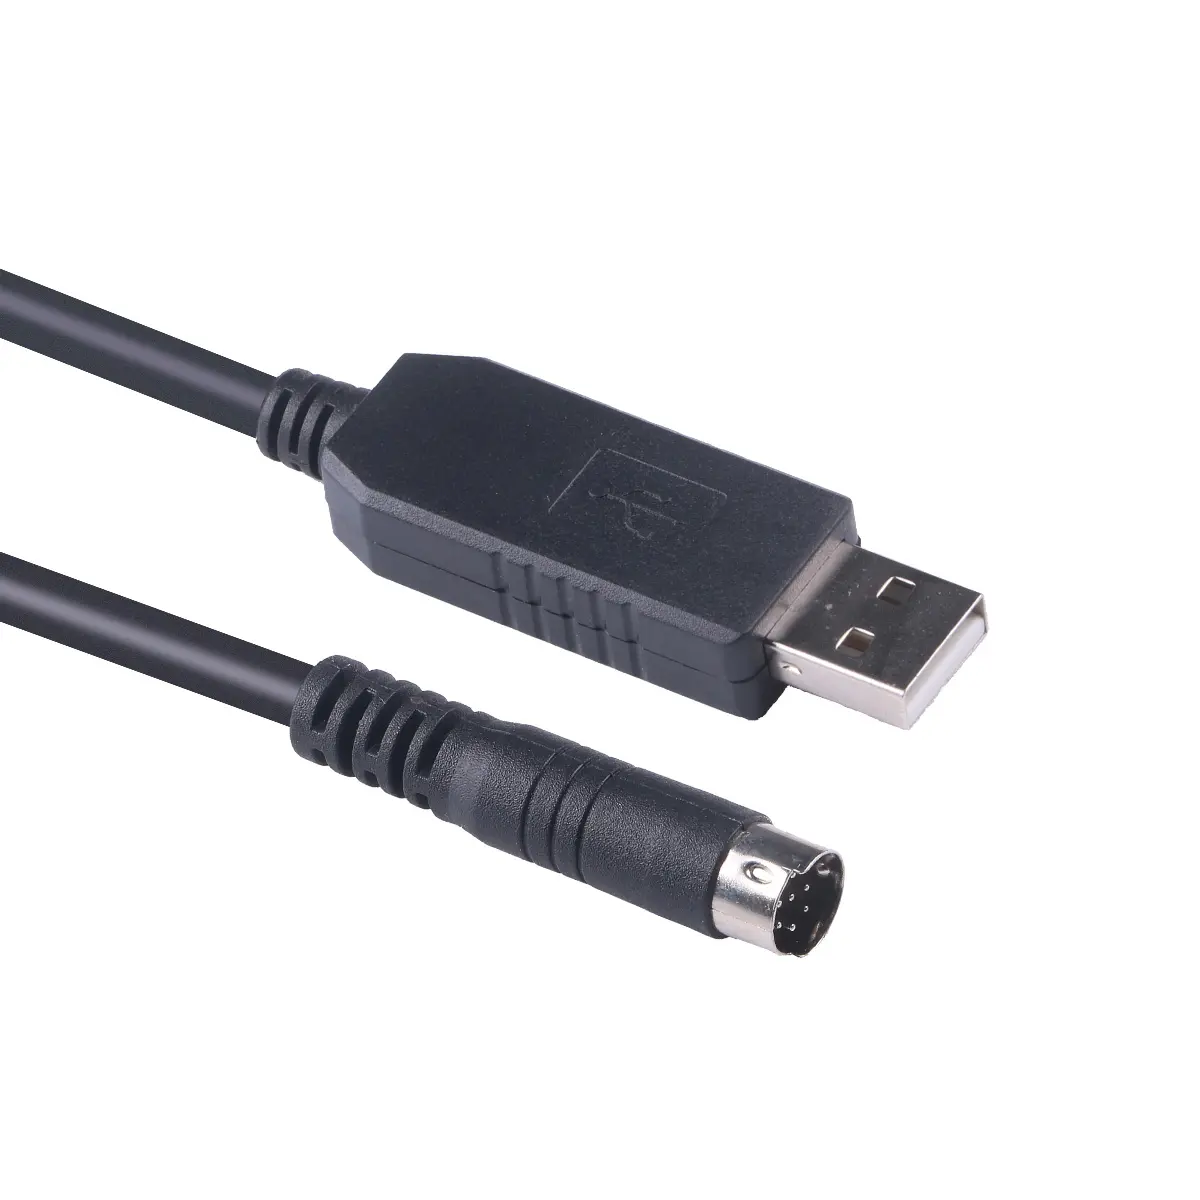 כבל תכנות USB עבור קנווד TM-V71 TM-V71A TM-V71E TM-V71G TM-D710 PG-5G PG-5H, RS232 USB טורי למיני דין 8P